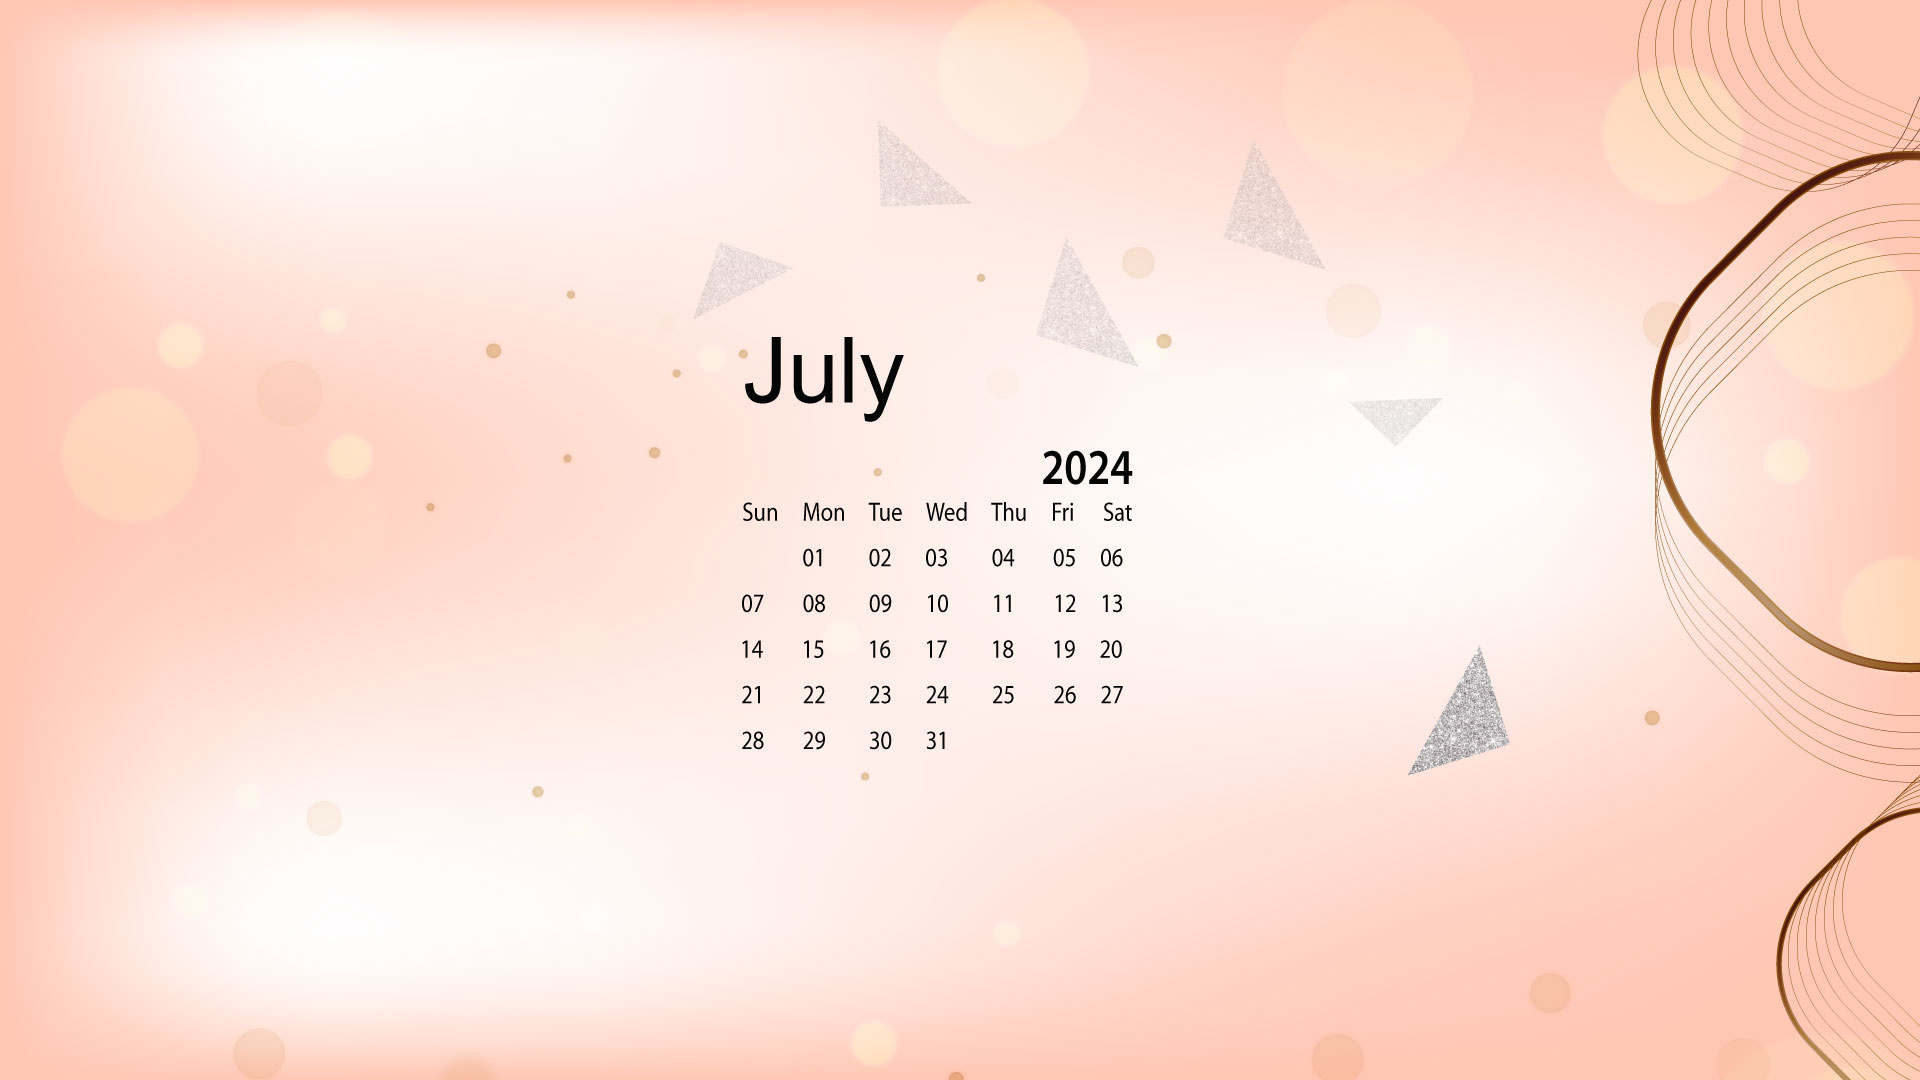 July 2024 Desktop Wallpaper Calendar - Calendarlabs pertaining to July 2024 Calendar Background